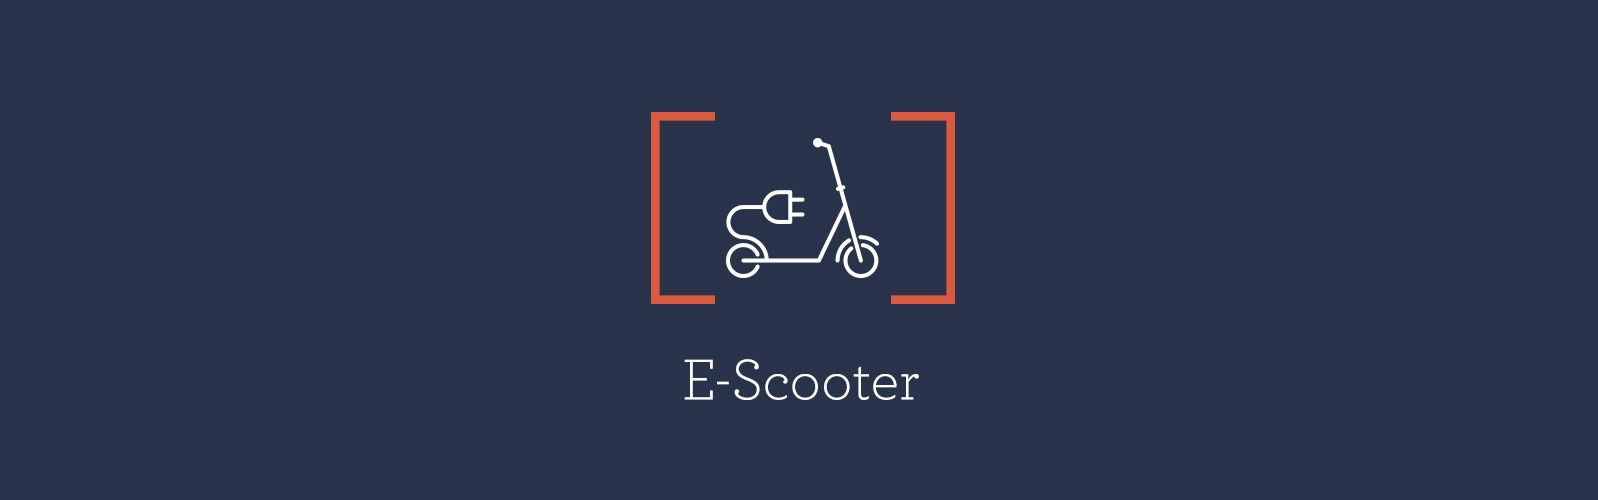 E-Scooter, E-Trikes, E-Quads